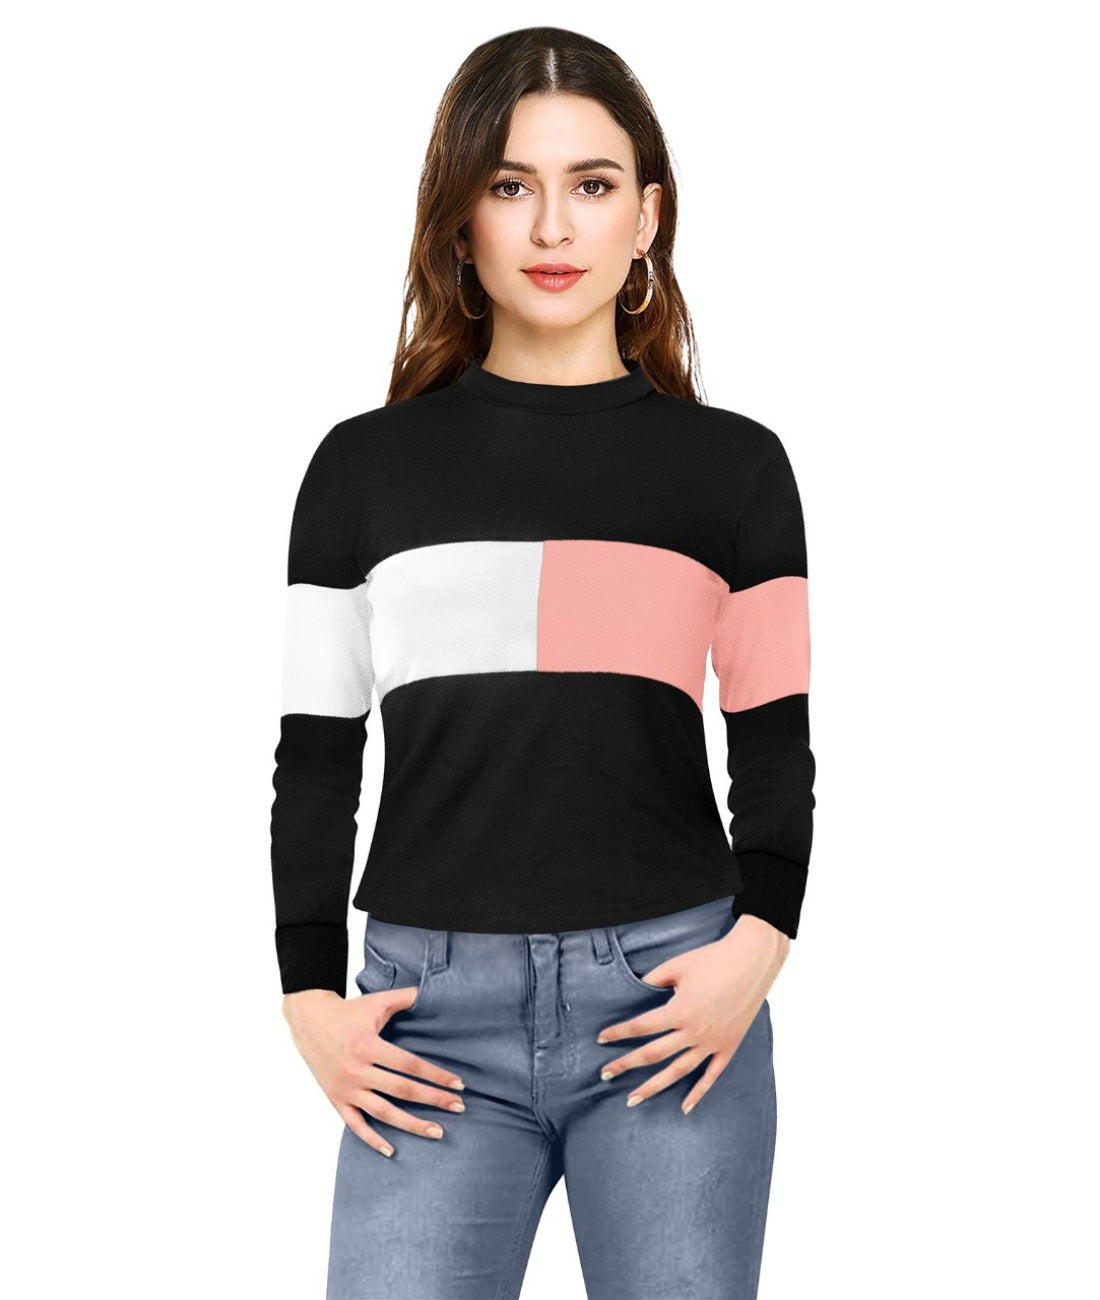 Women's Western Wear Hosiery T Shirts (Peach) - GillKart